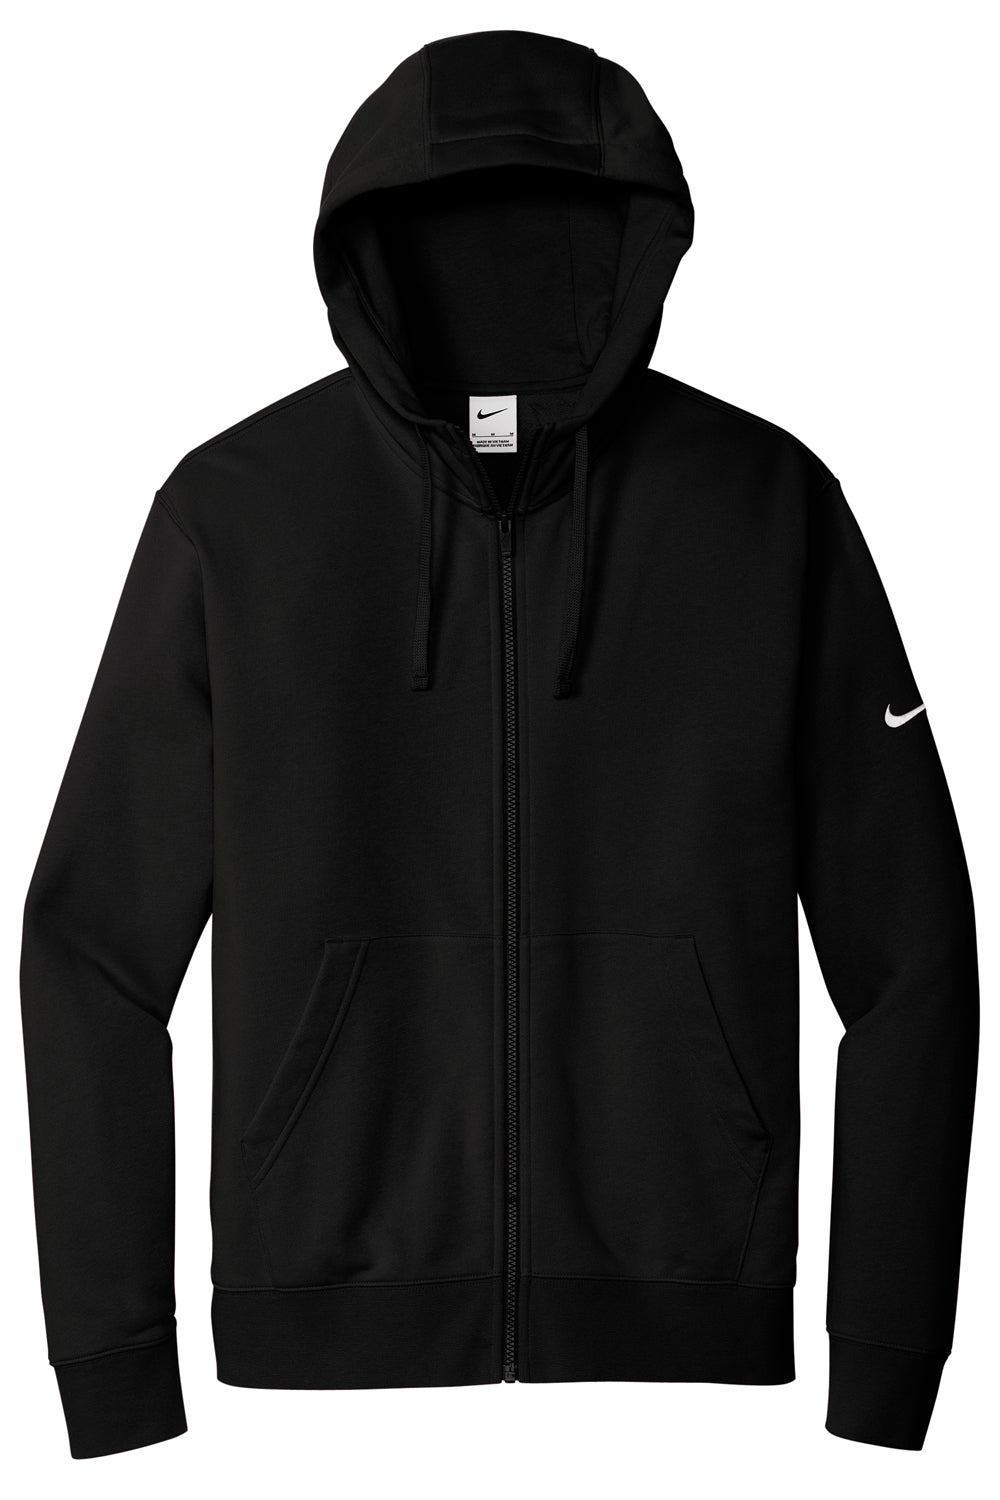 Nike NKDR1513 Mens Club Fleece Full Zip Hooded Sweatshirt Hoodie Black Flat Front